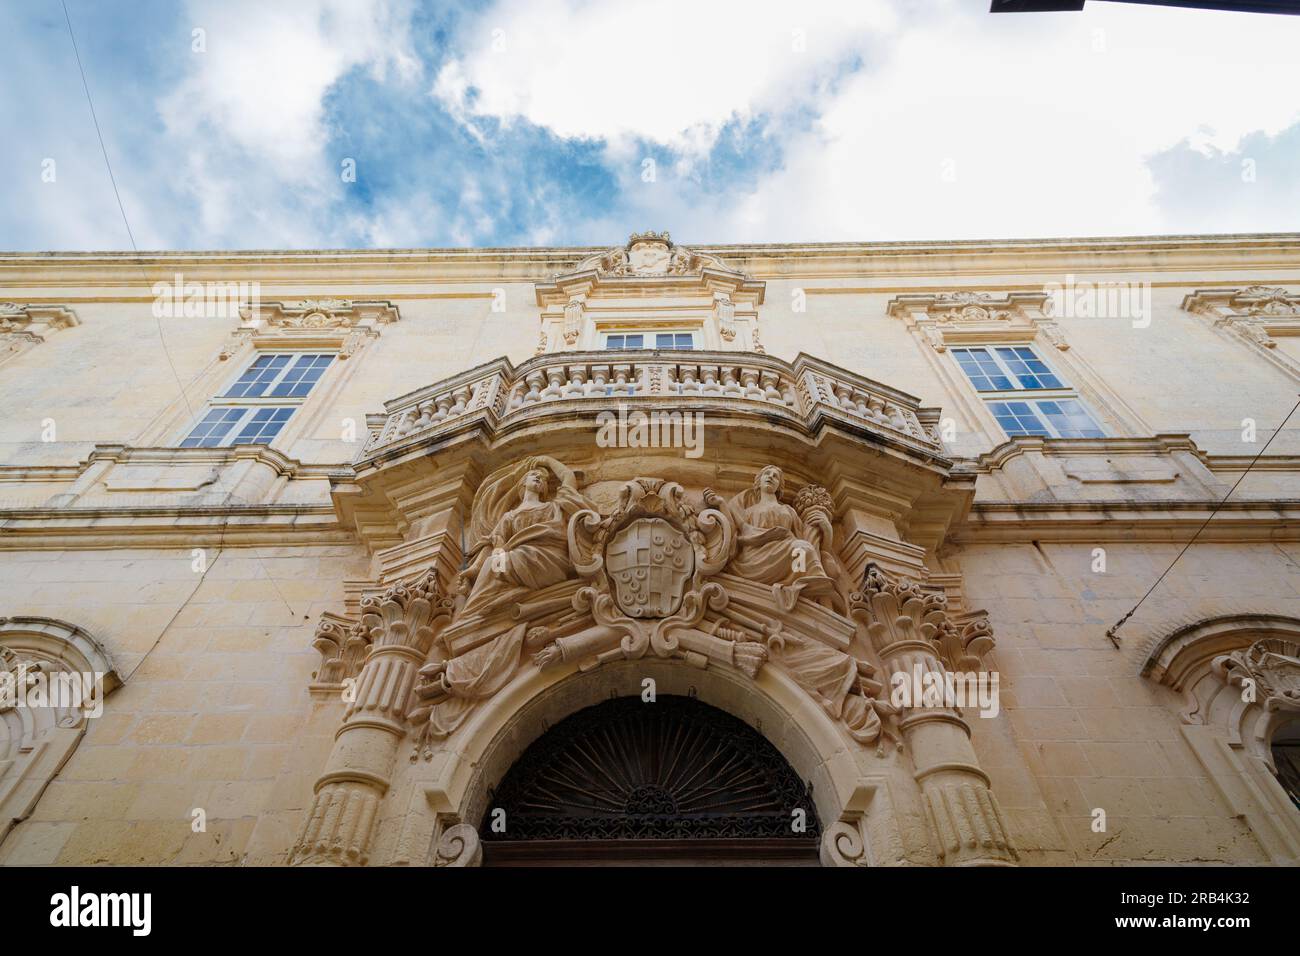 Baroque sculpture. An extravagant doorway in the old city of Rabat (Malta) Stock Photo